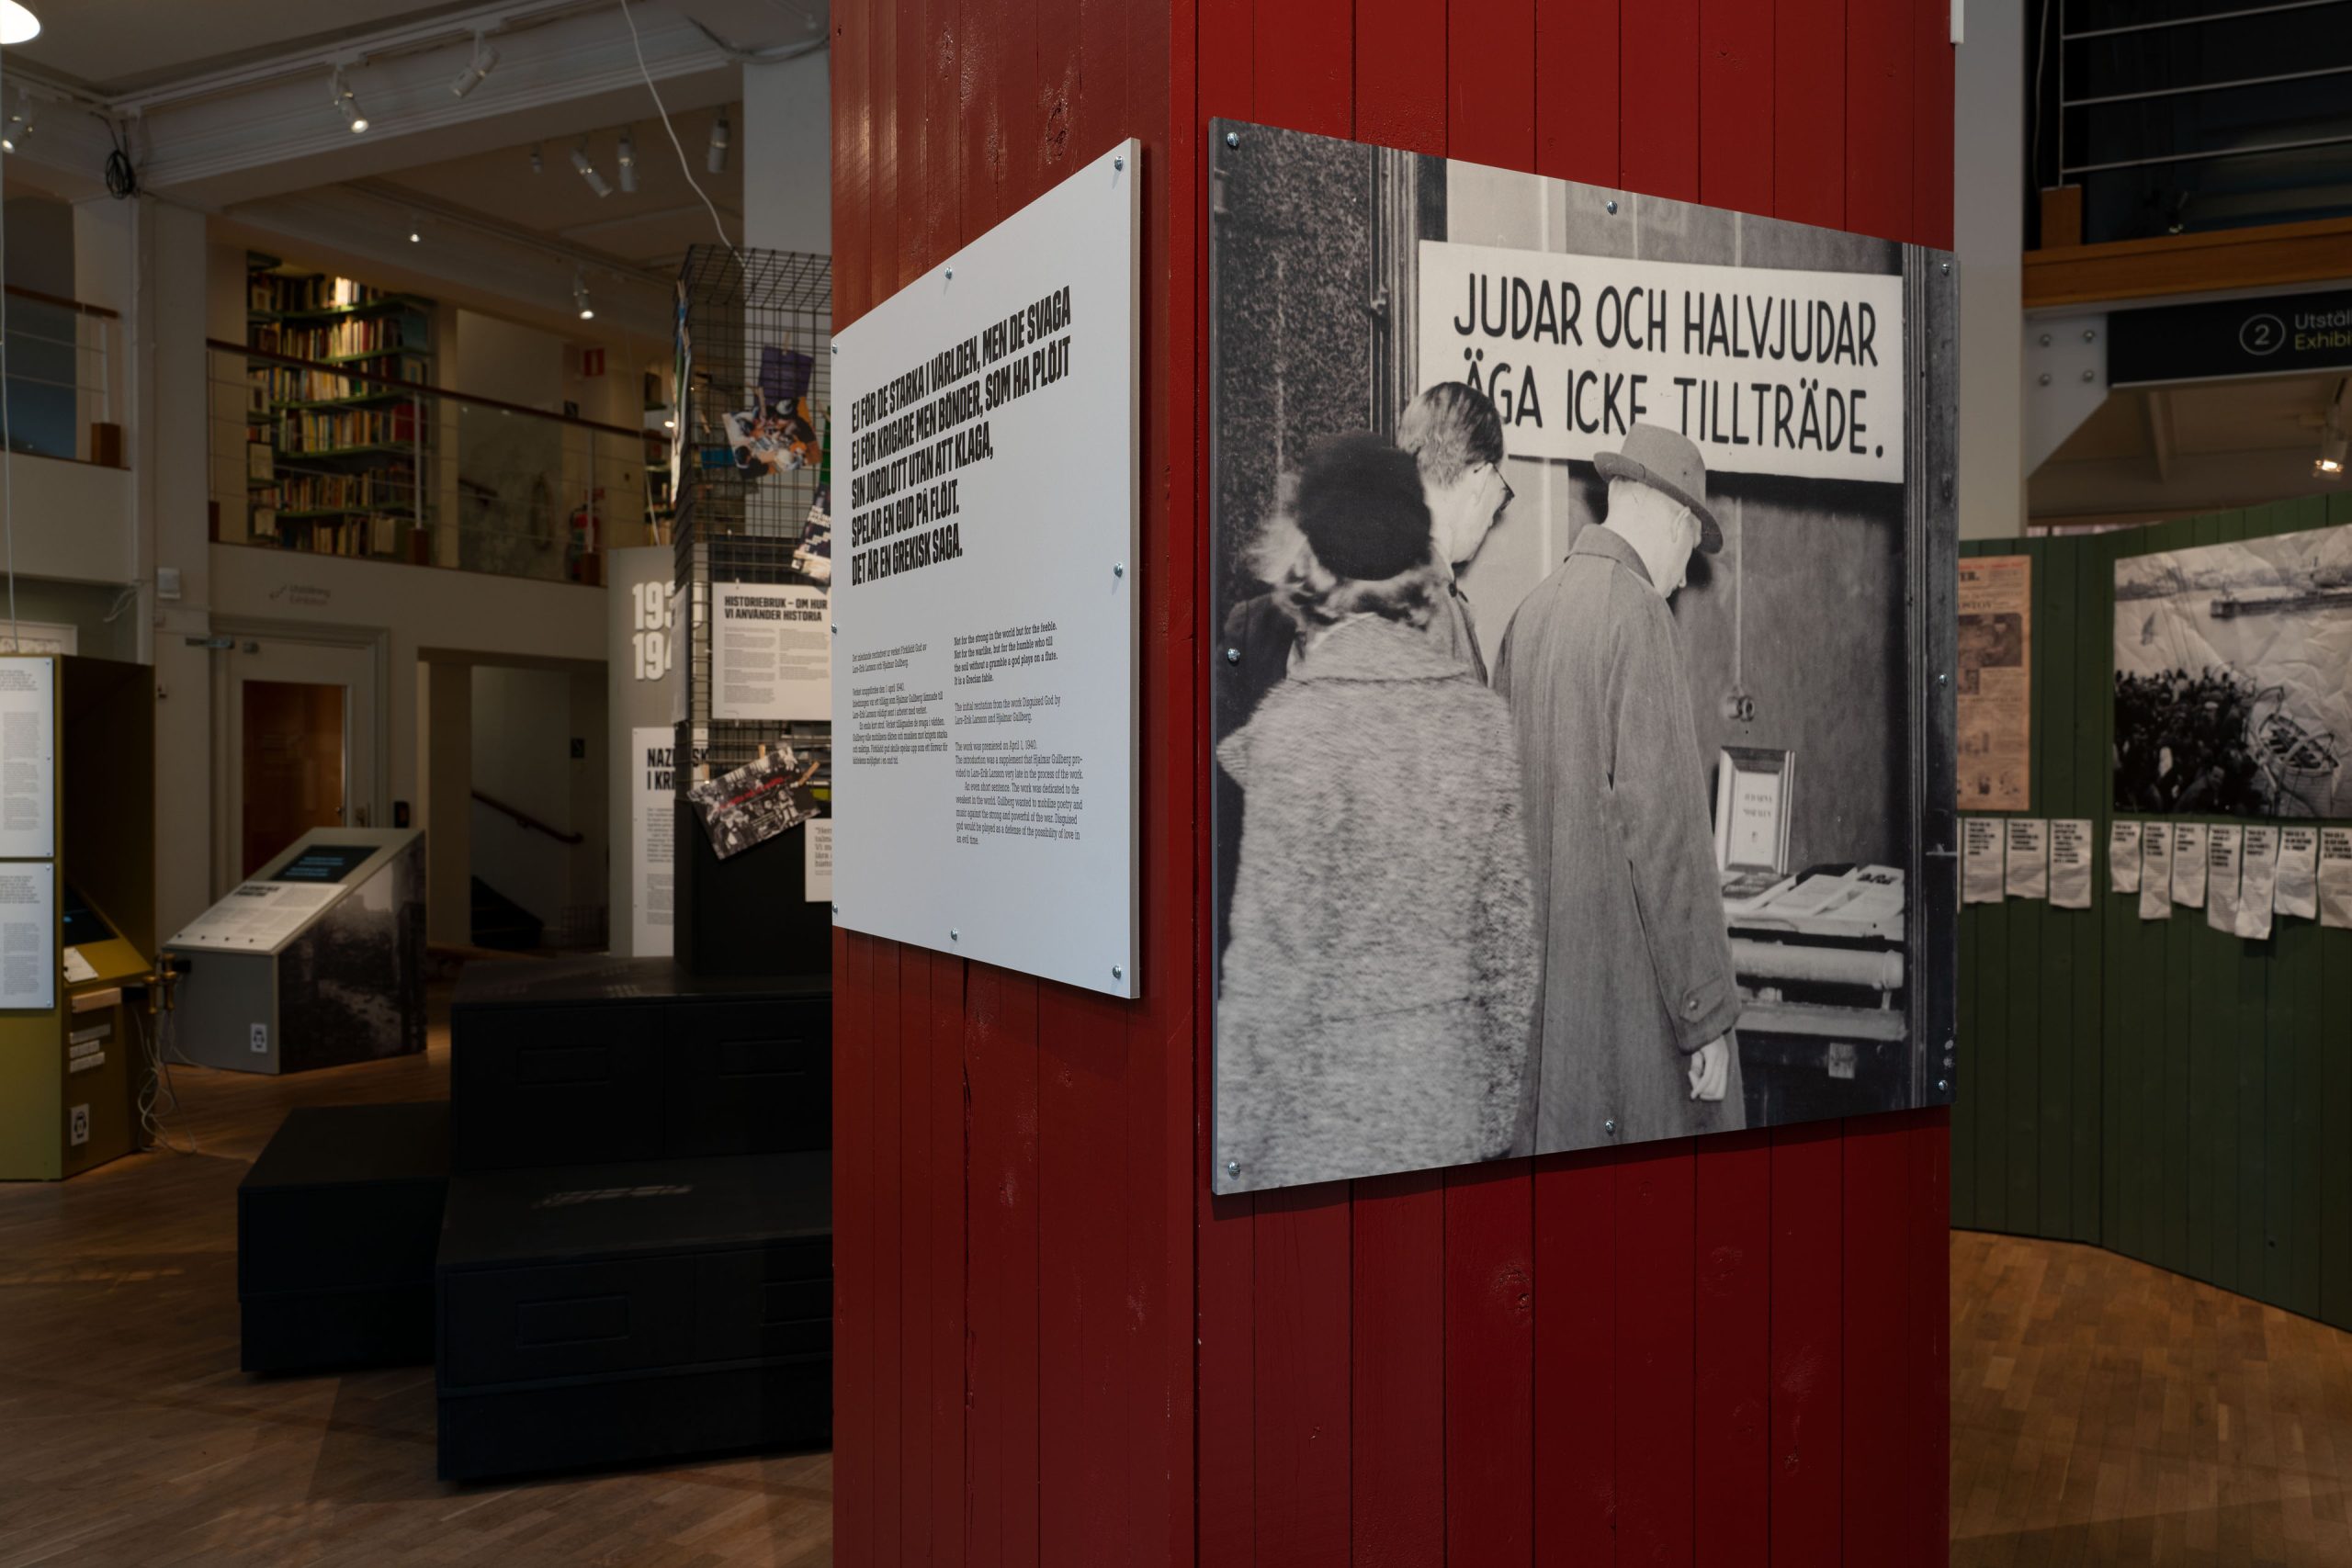 En pelare i en utställningslokal. På pelaren sitter ett svartvitt foto visande ett skyltfönster med texten "judar och halvjudar äga icke tillträde"